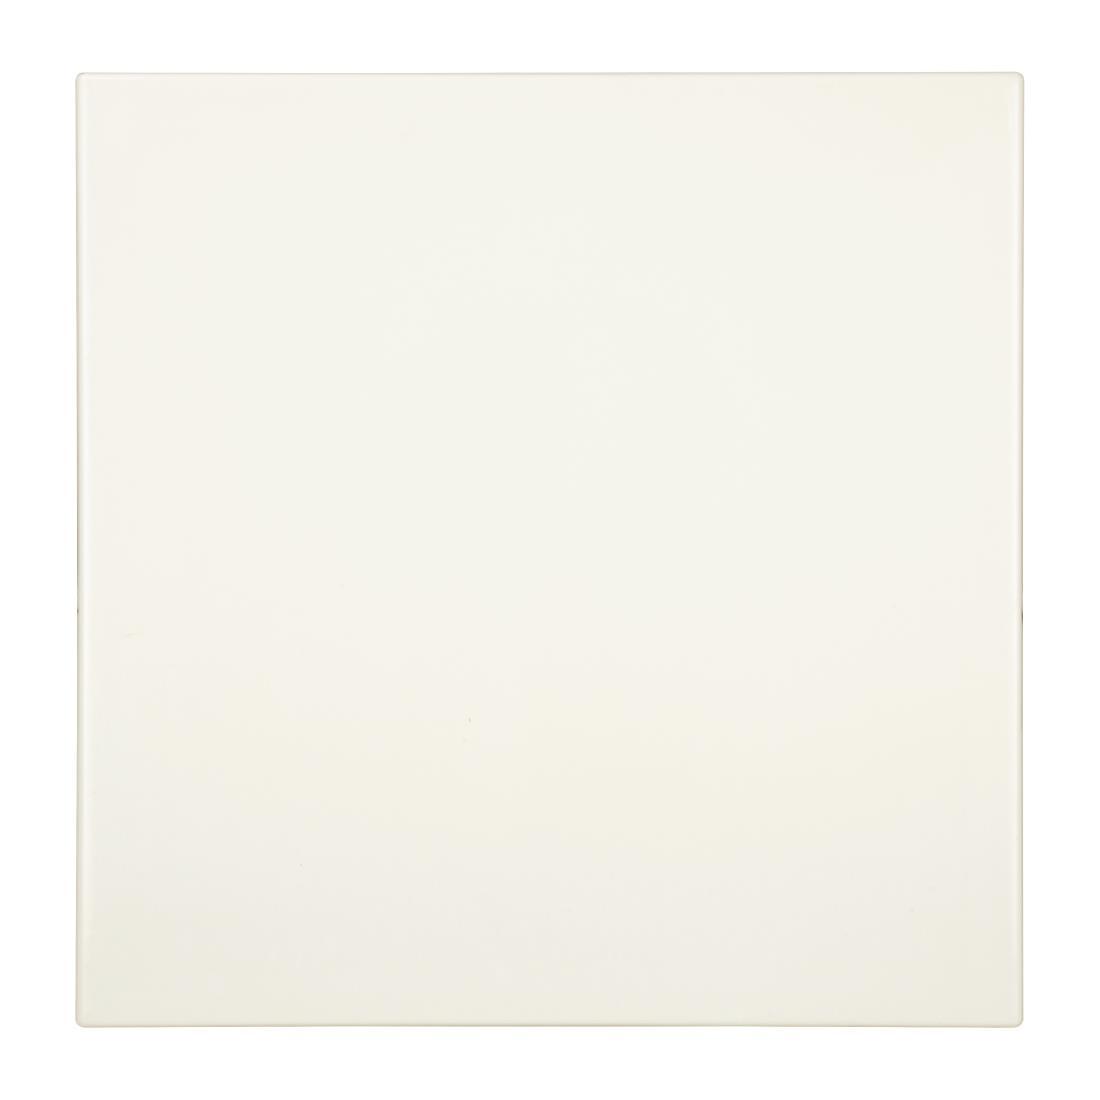 Bolero Pre-drilled Square Table Top White 700mm - GG641  - 1